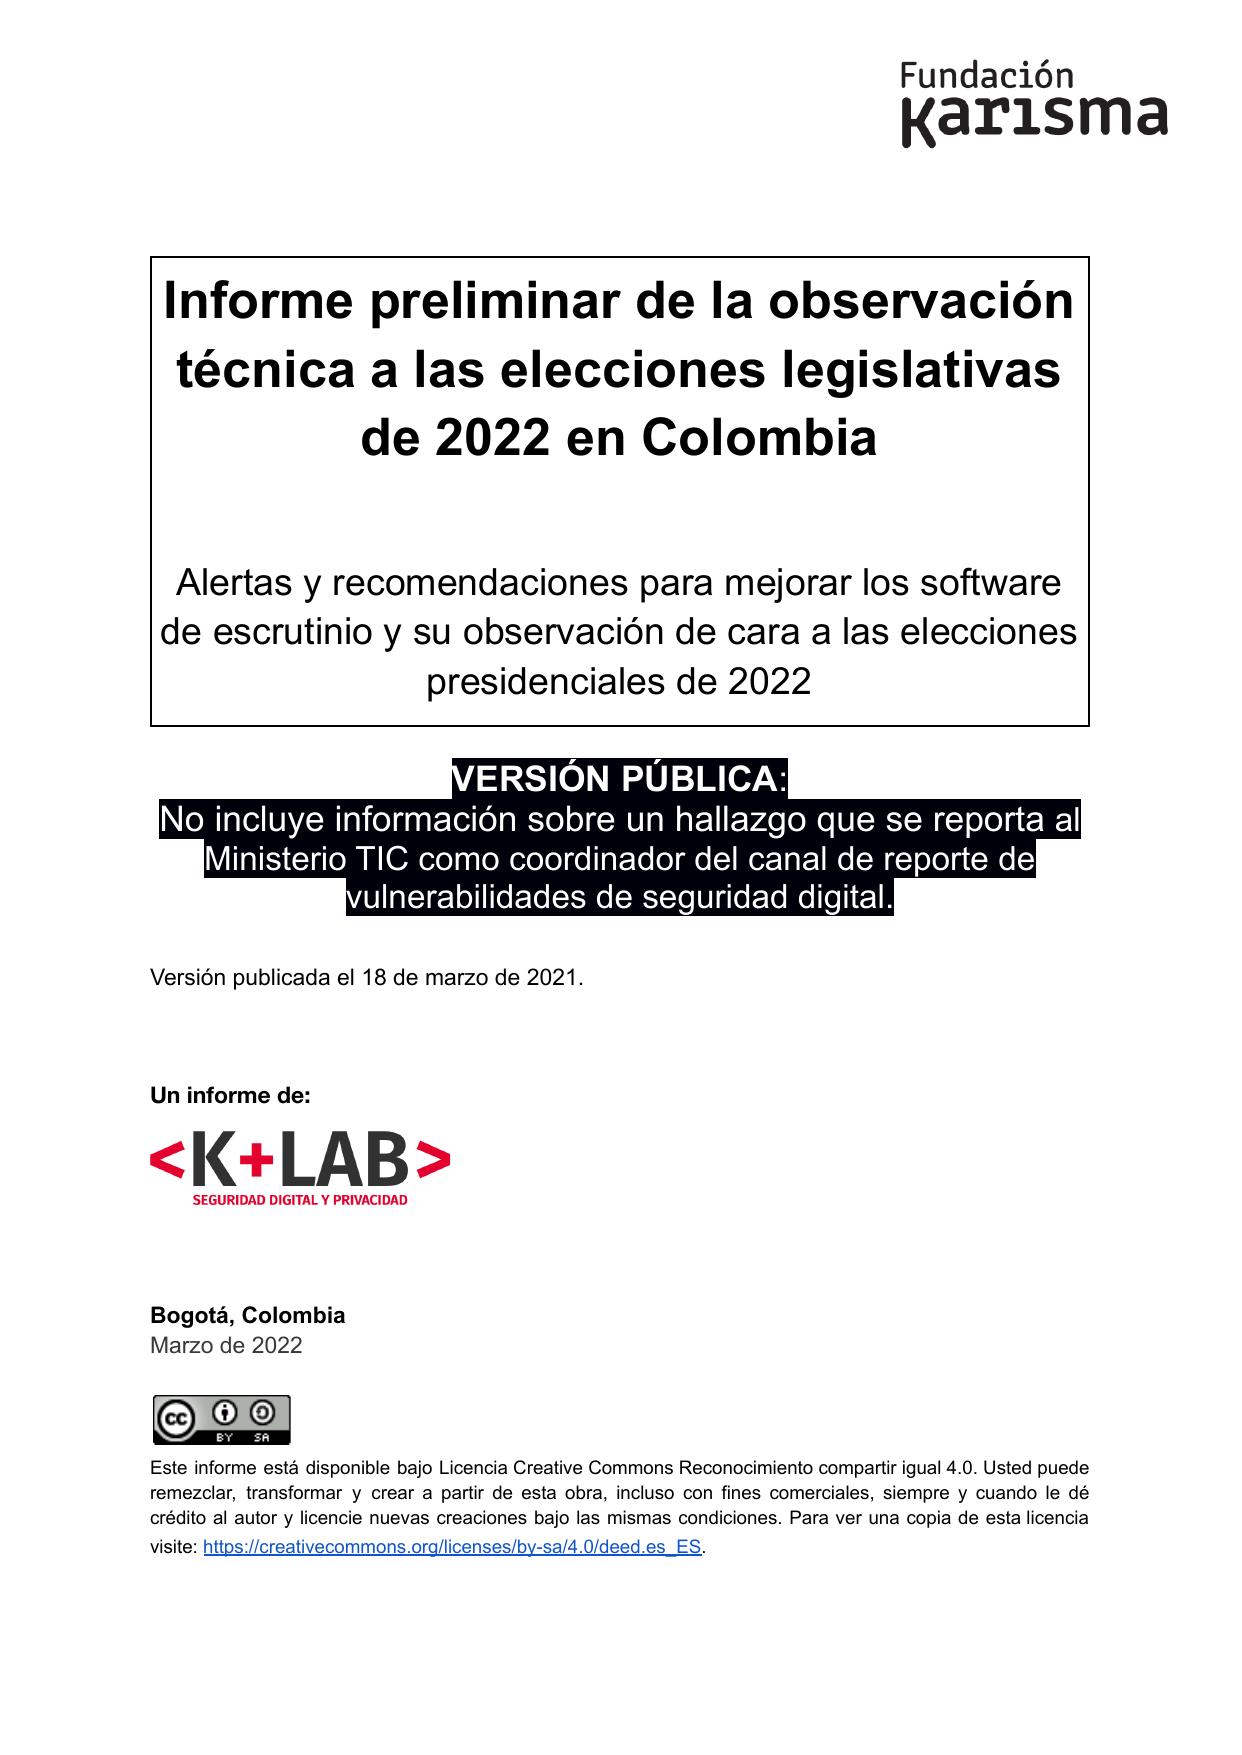 Informe preliminar de la observación técnica a las elecciones legislativas de 2022 en Colombia :: Alertas y recomendaciones para mejorar los software de escrutinio y su observación de cara a las elecciones presidenciales de 2022